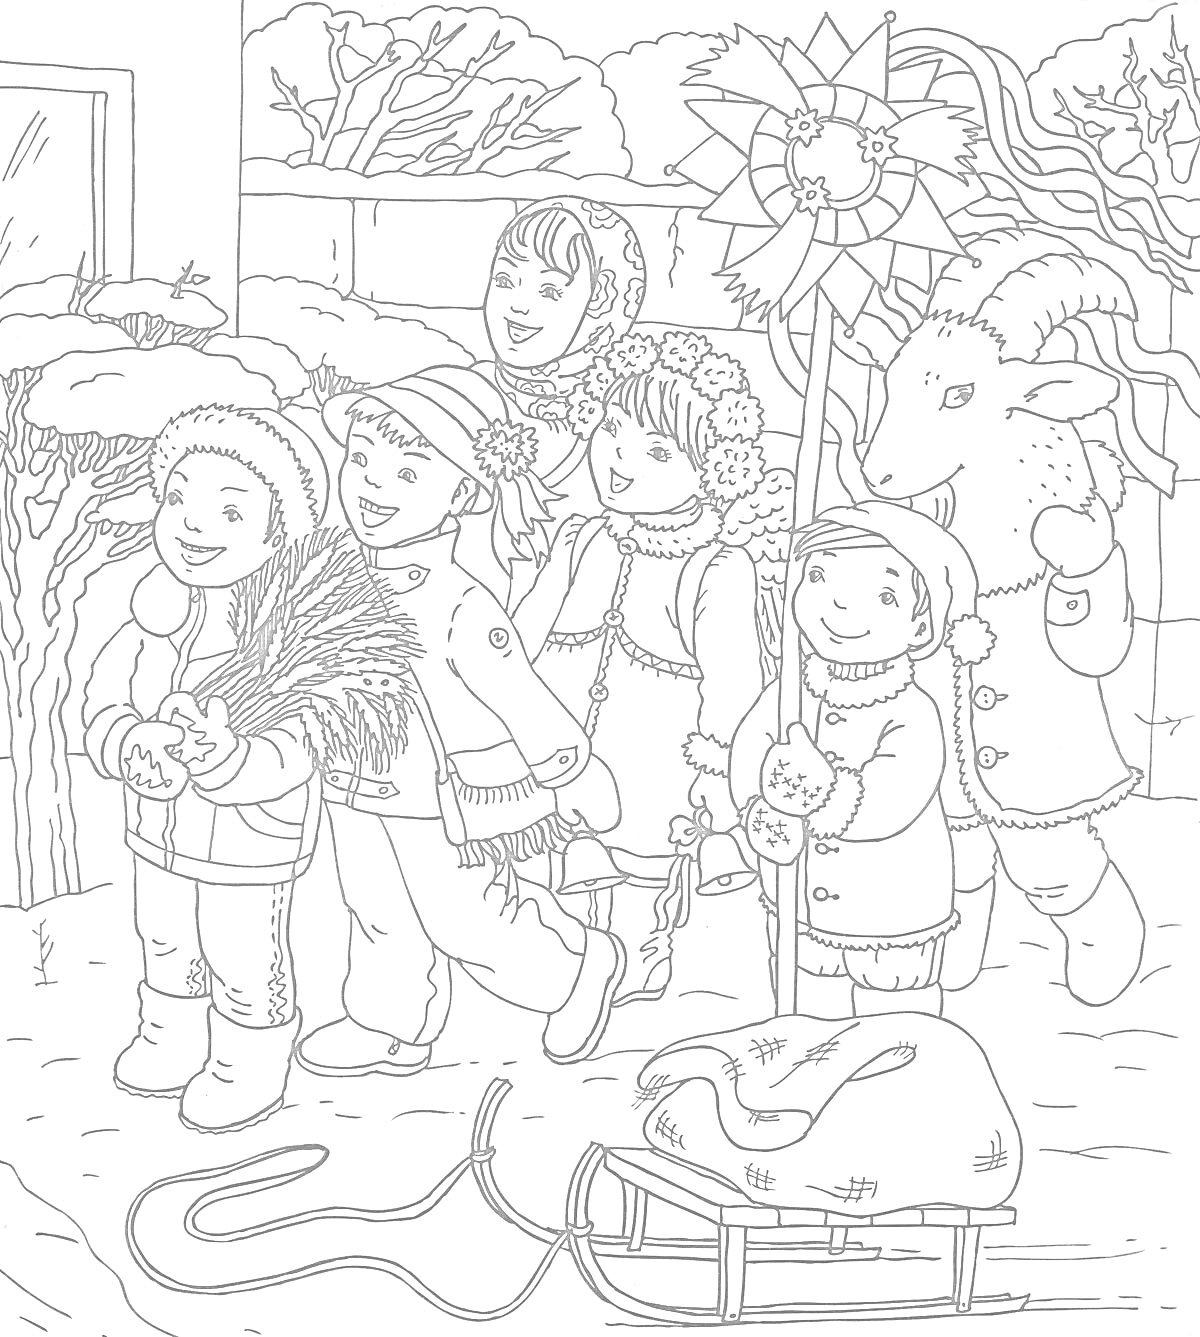 Группа детей на колядках с рождественскими песнями у дома, два мальчика с рождественской звездой и снопом, девочка с венком, ребенок в костюме козла, снежный пейзаж, санки